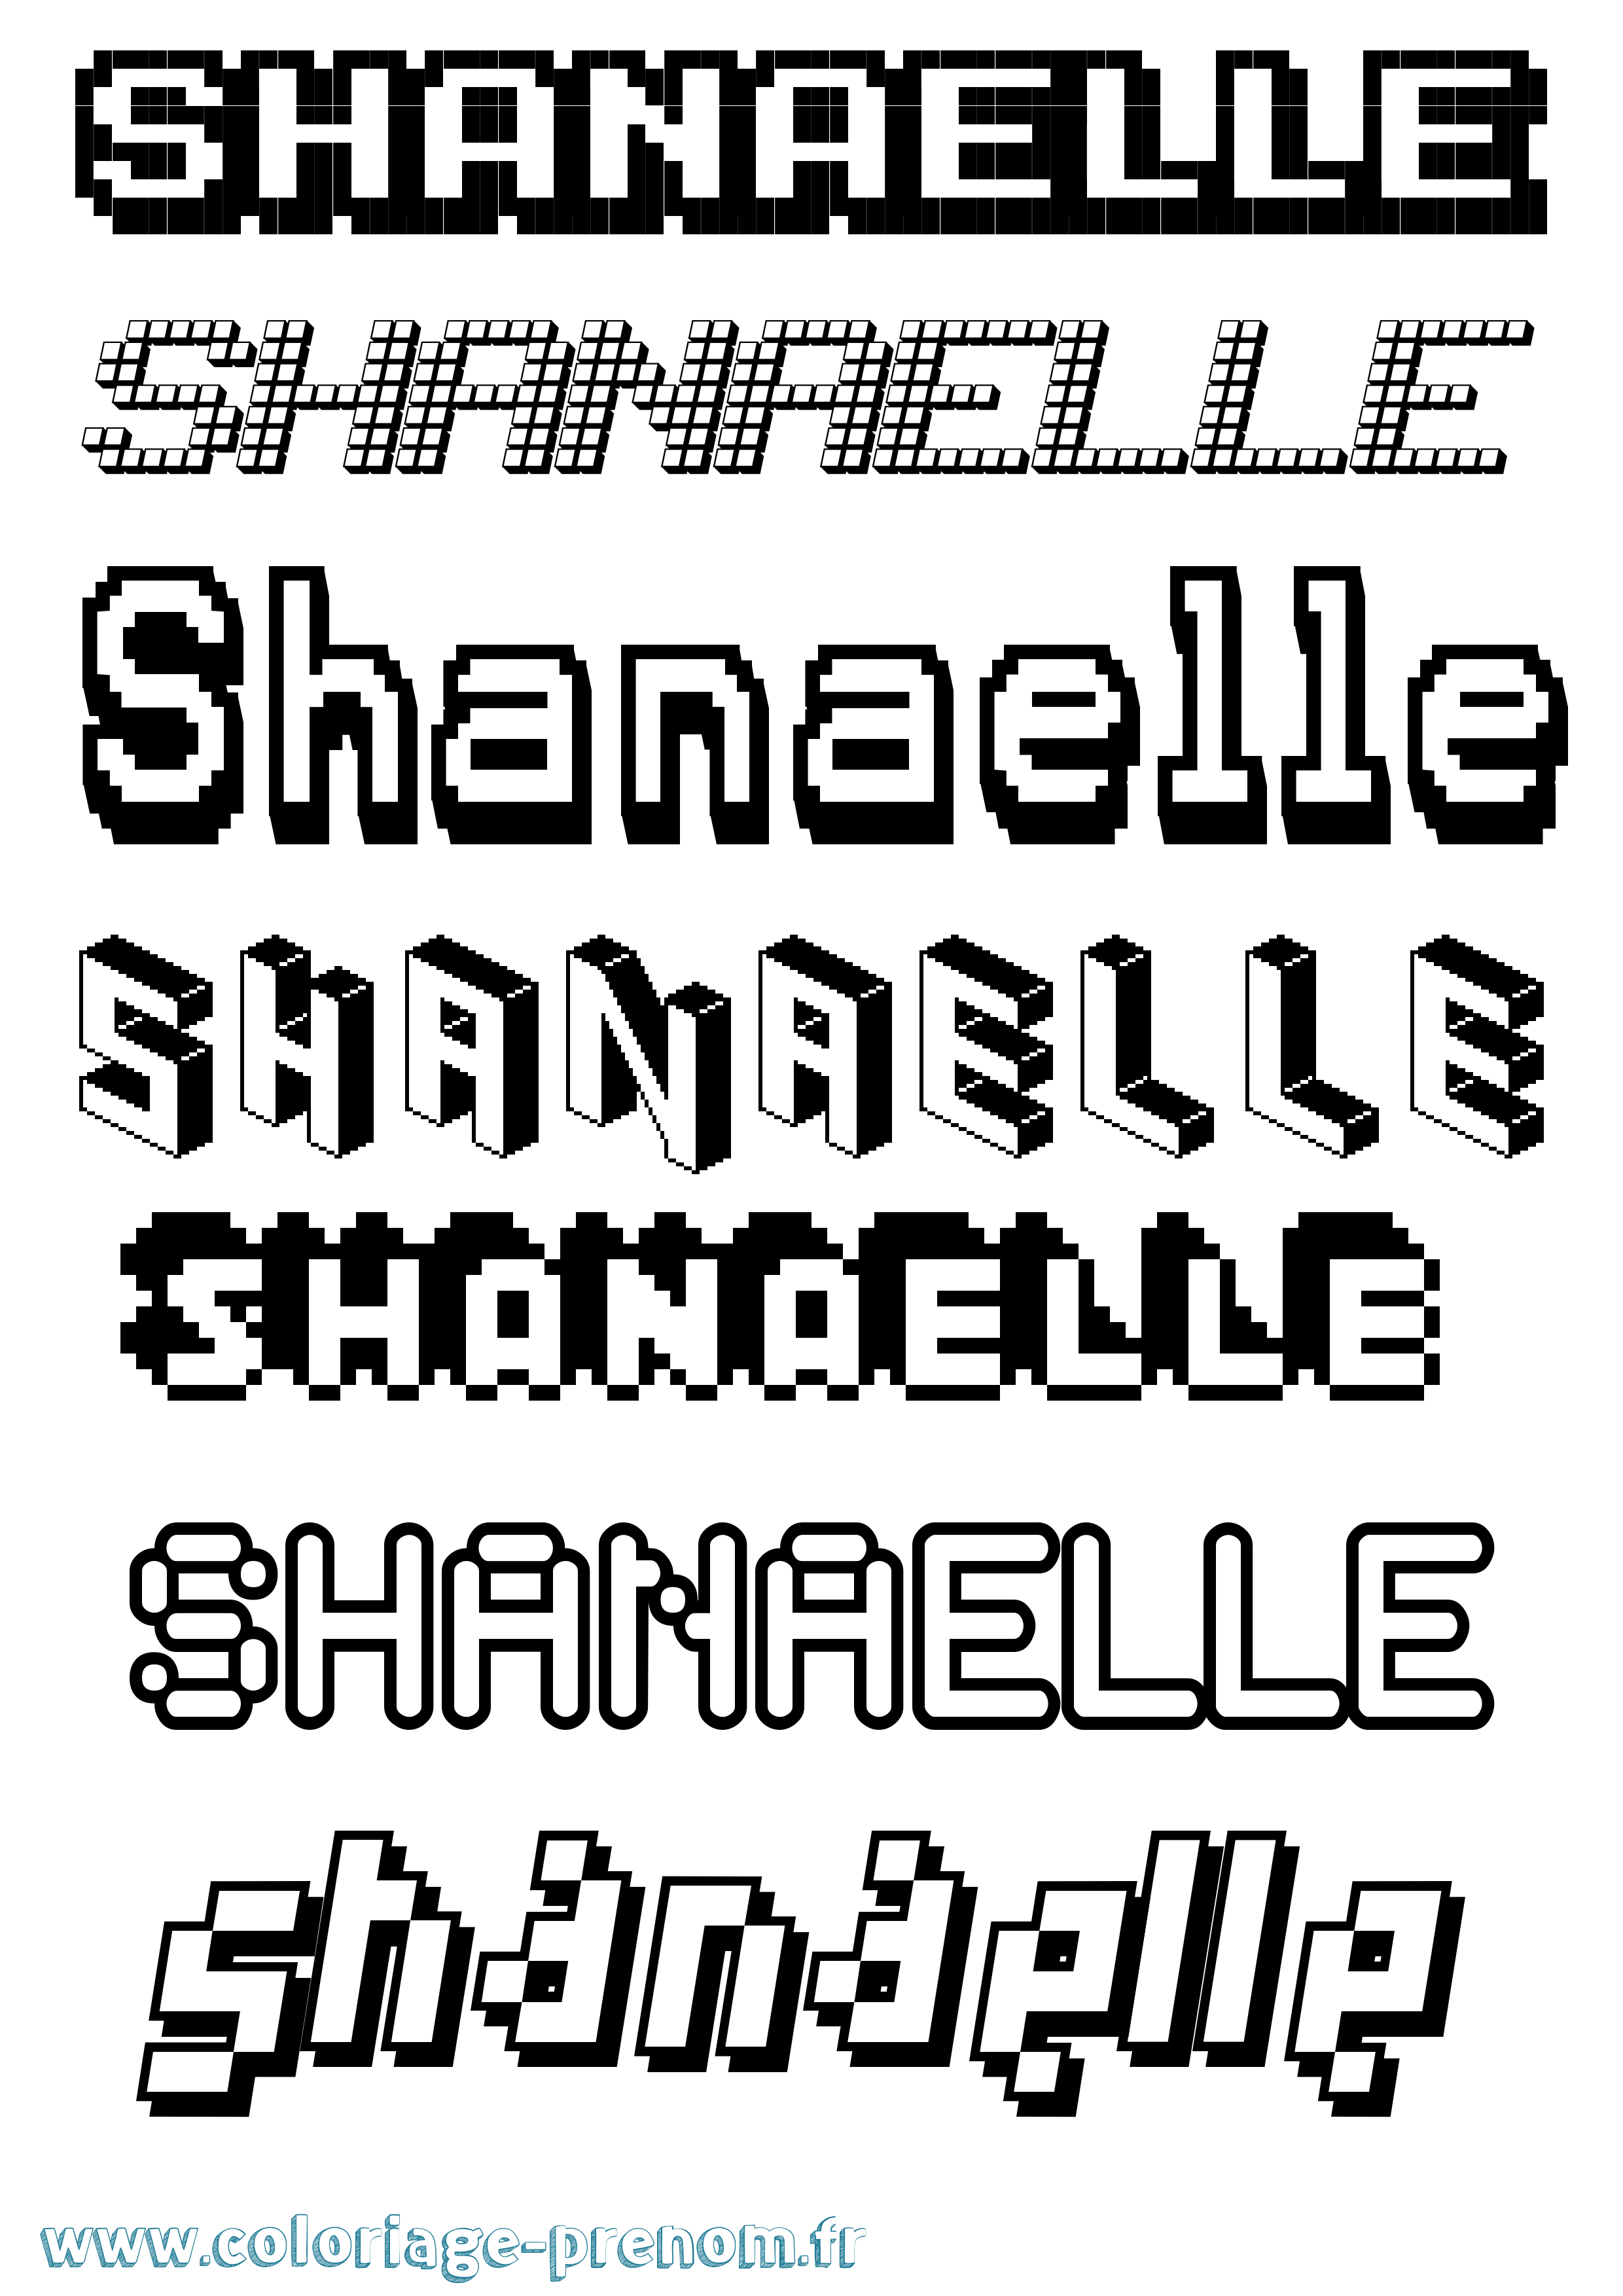 Coloriage prénom Shanaelle Pixel